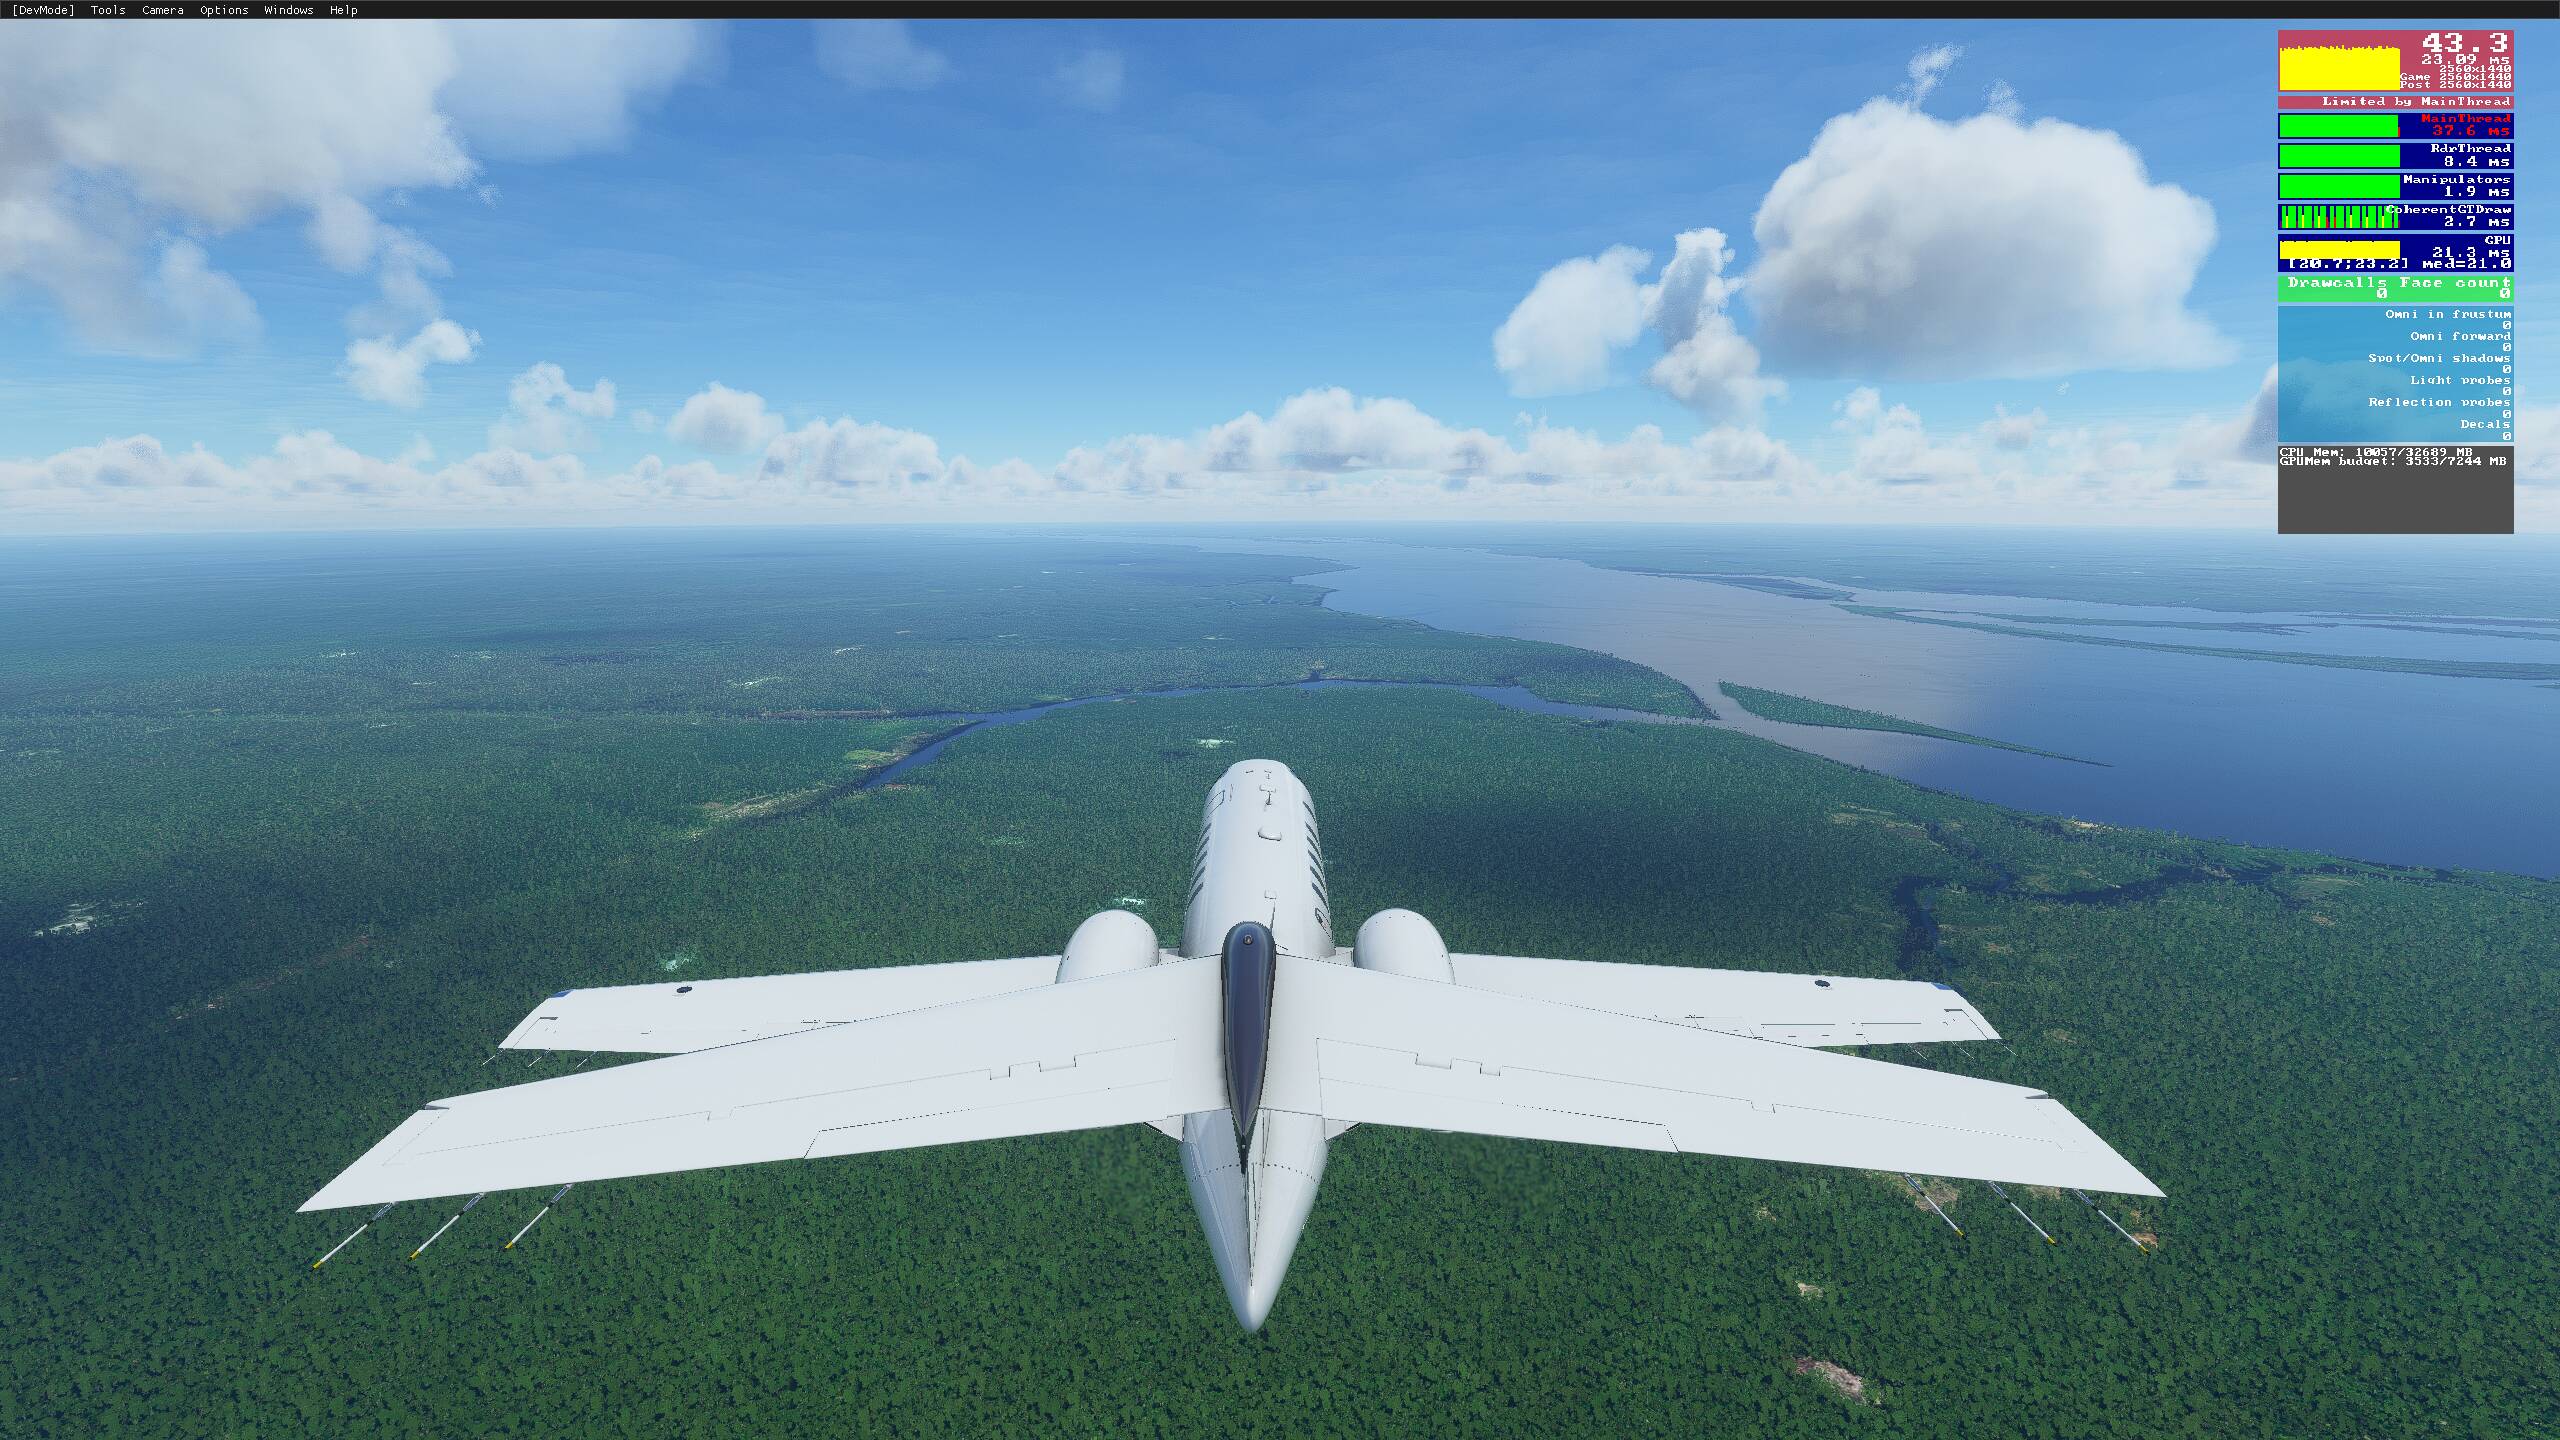 Introduction – FlightGear Flight Simulator